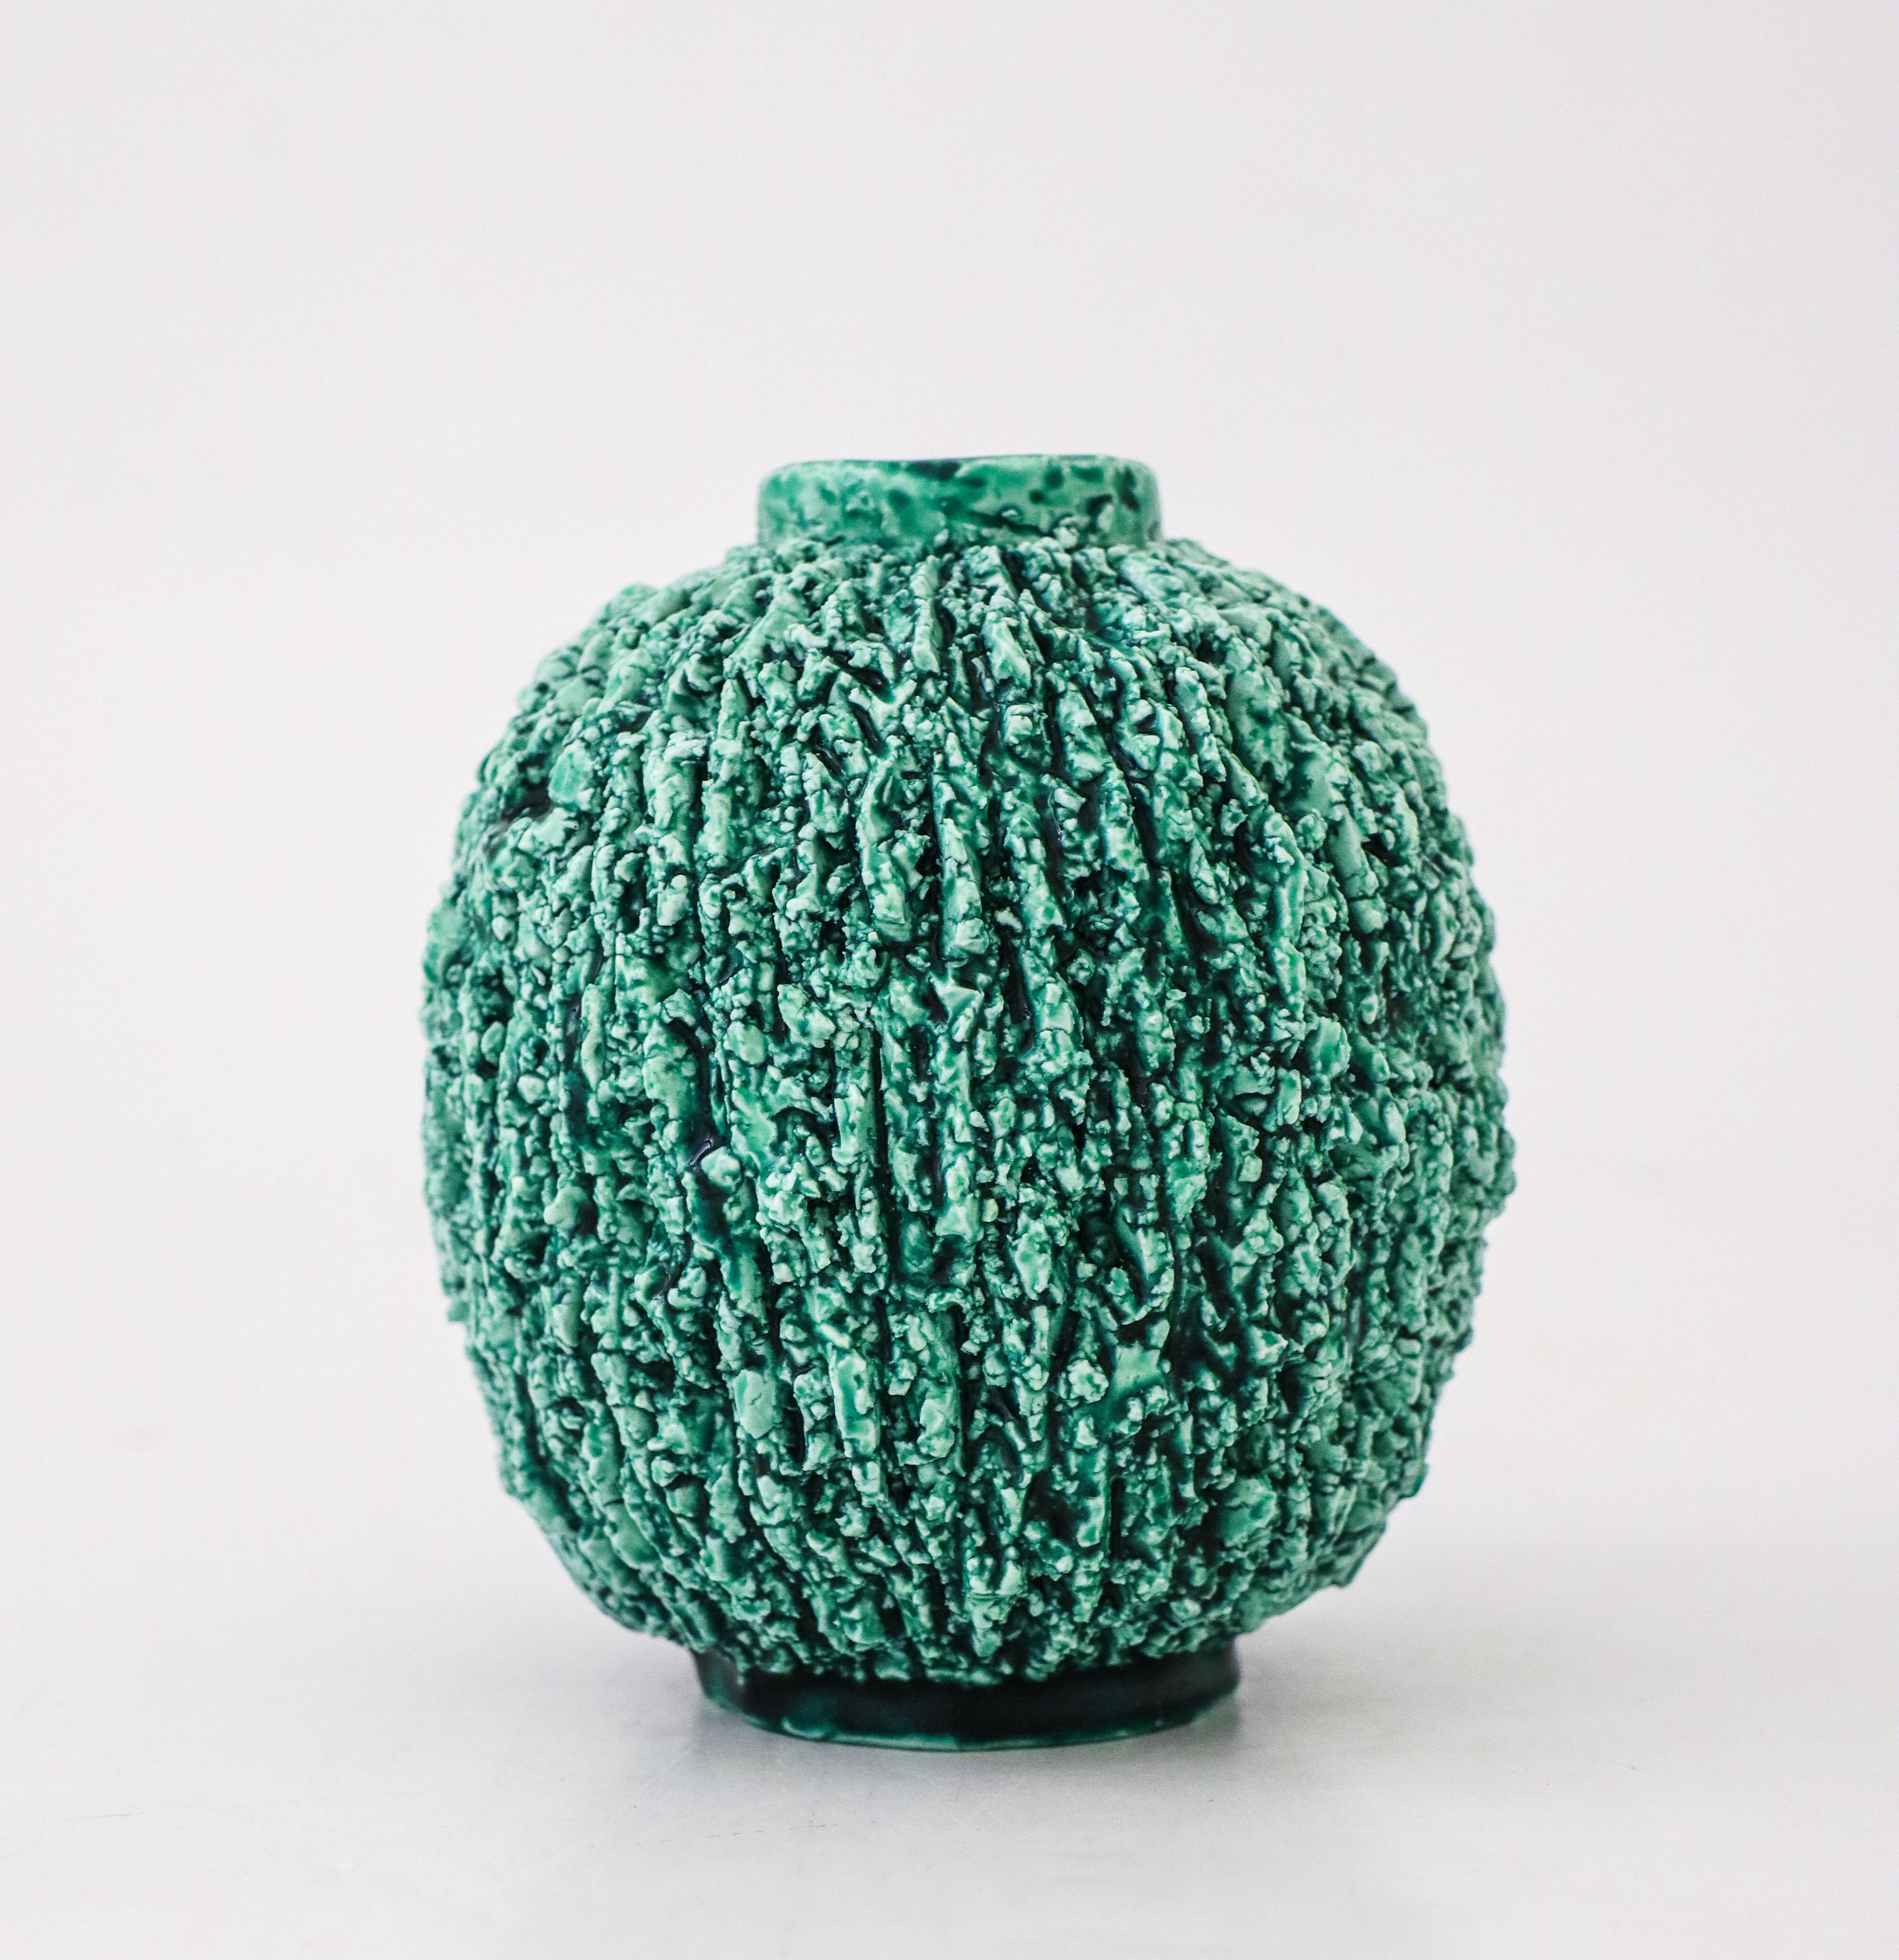 Glazed A Green Hedgehog vase - Chamotte - Gunnar Nylund - Rörstrand For Sale